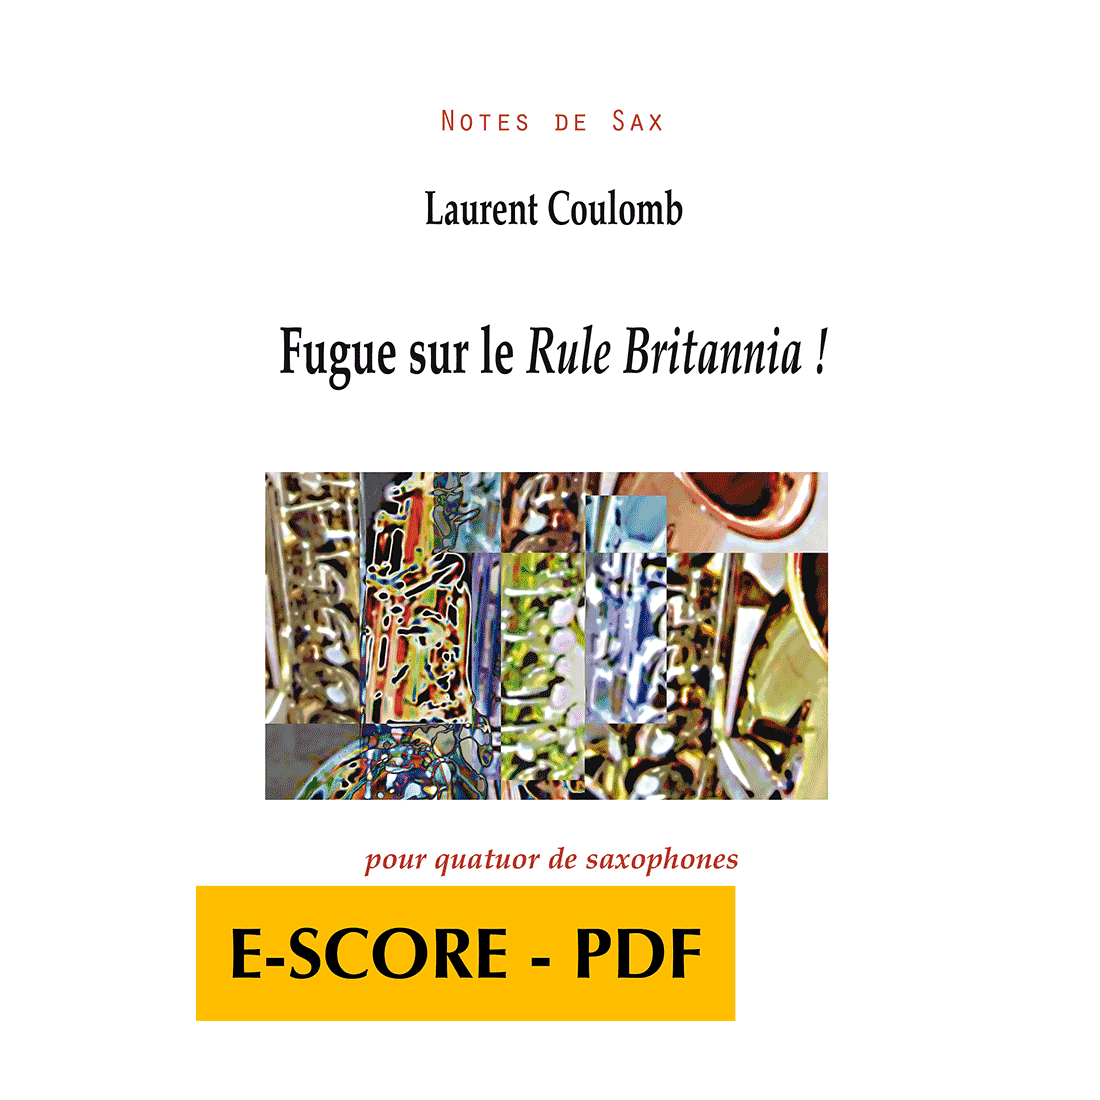 Fugue sur le Rule Britannia ! pour quatuor de saxophones - E-score PDF